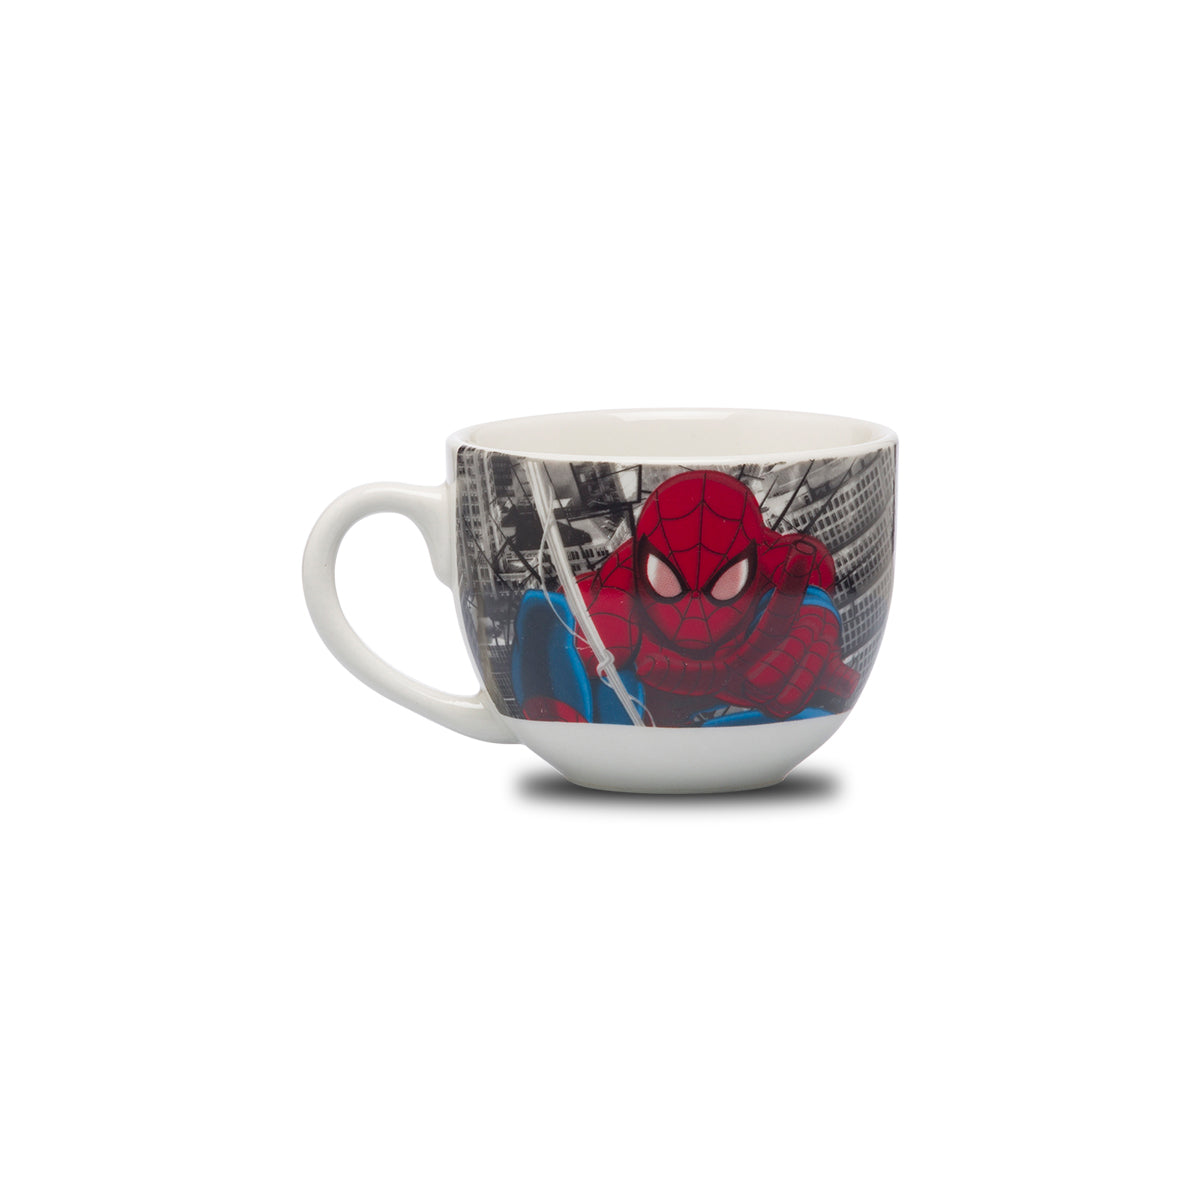 Tazza in ceramica con stampa Spiderman